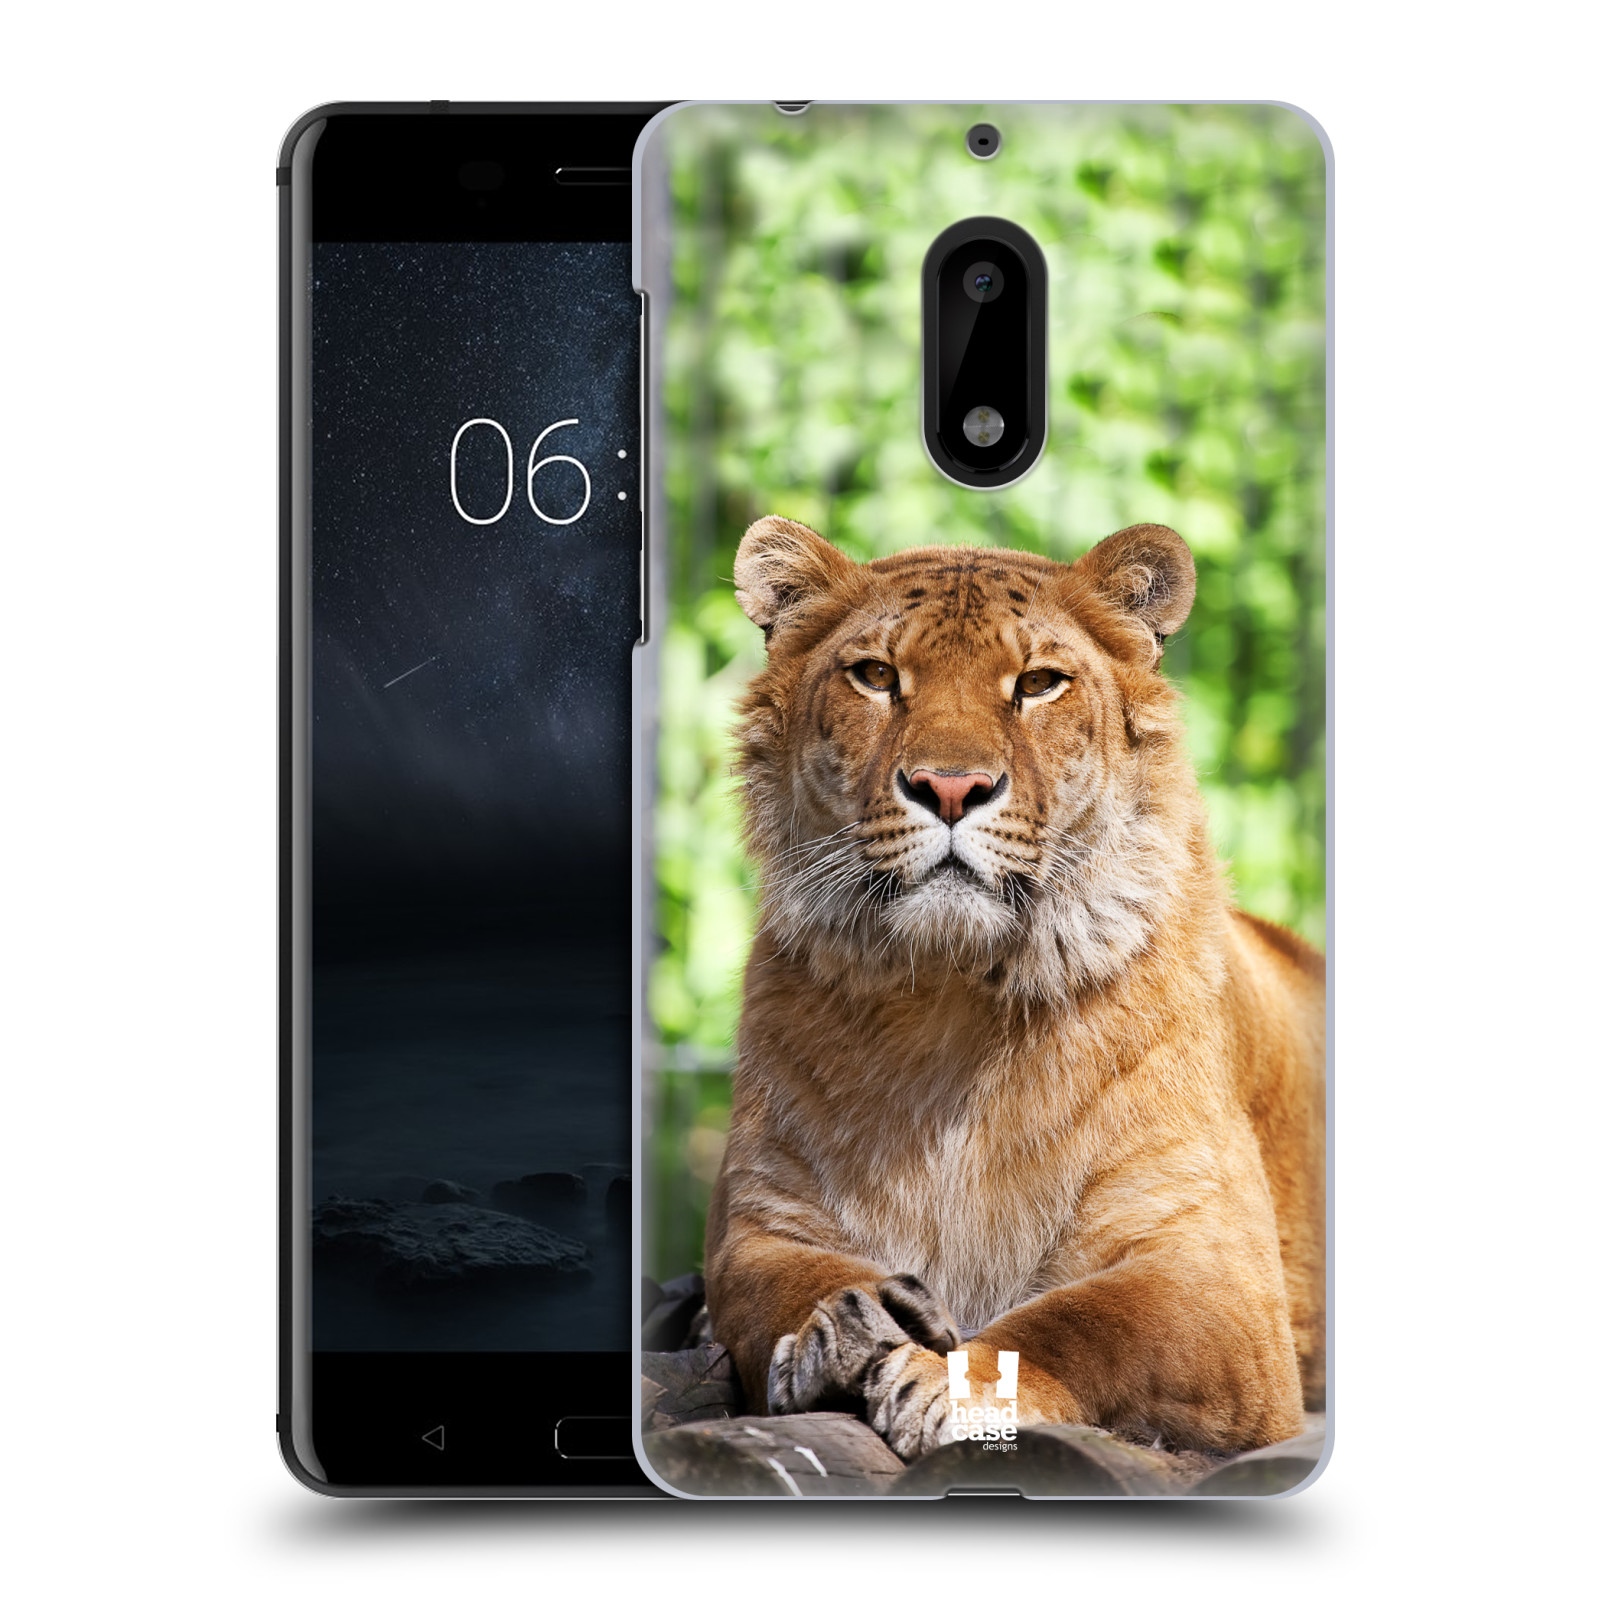 HEAD CASE plastový obal na mobil Nokia 6 vzor slavná zvířata foto tygr